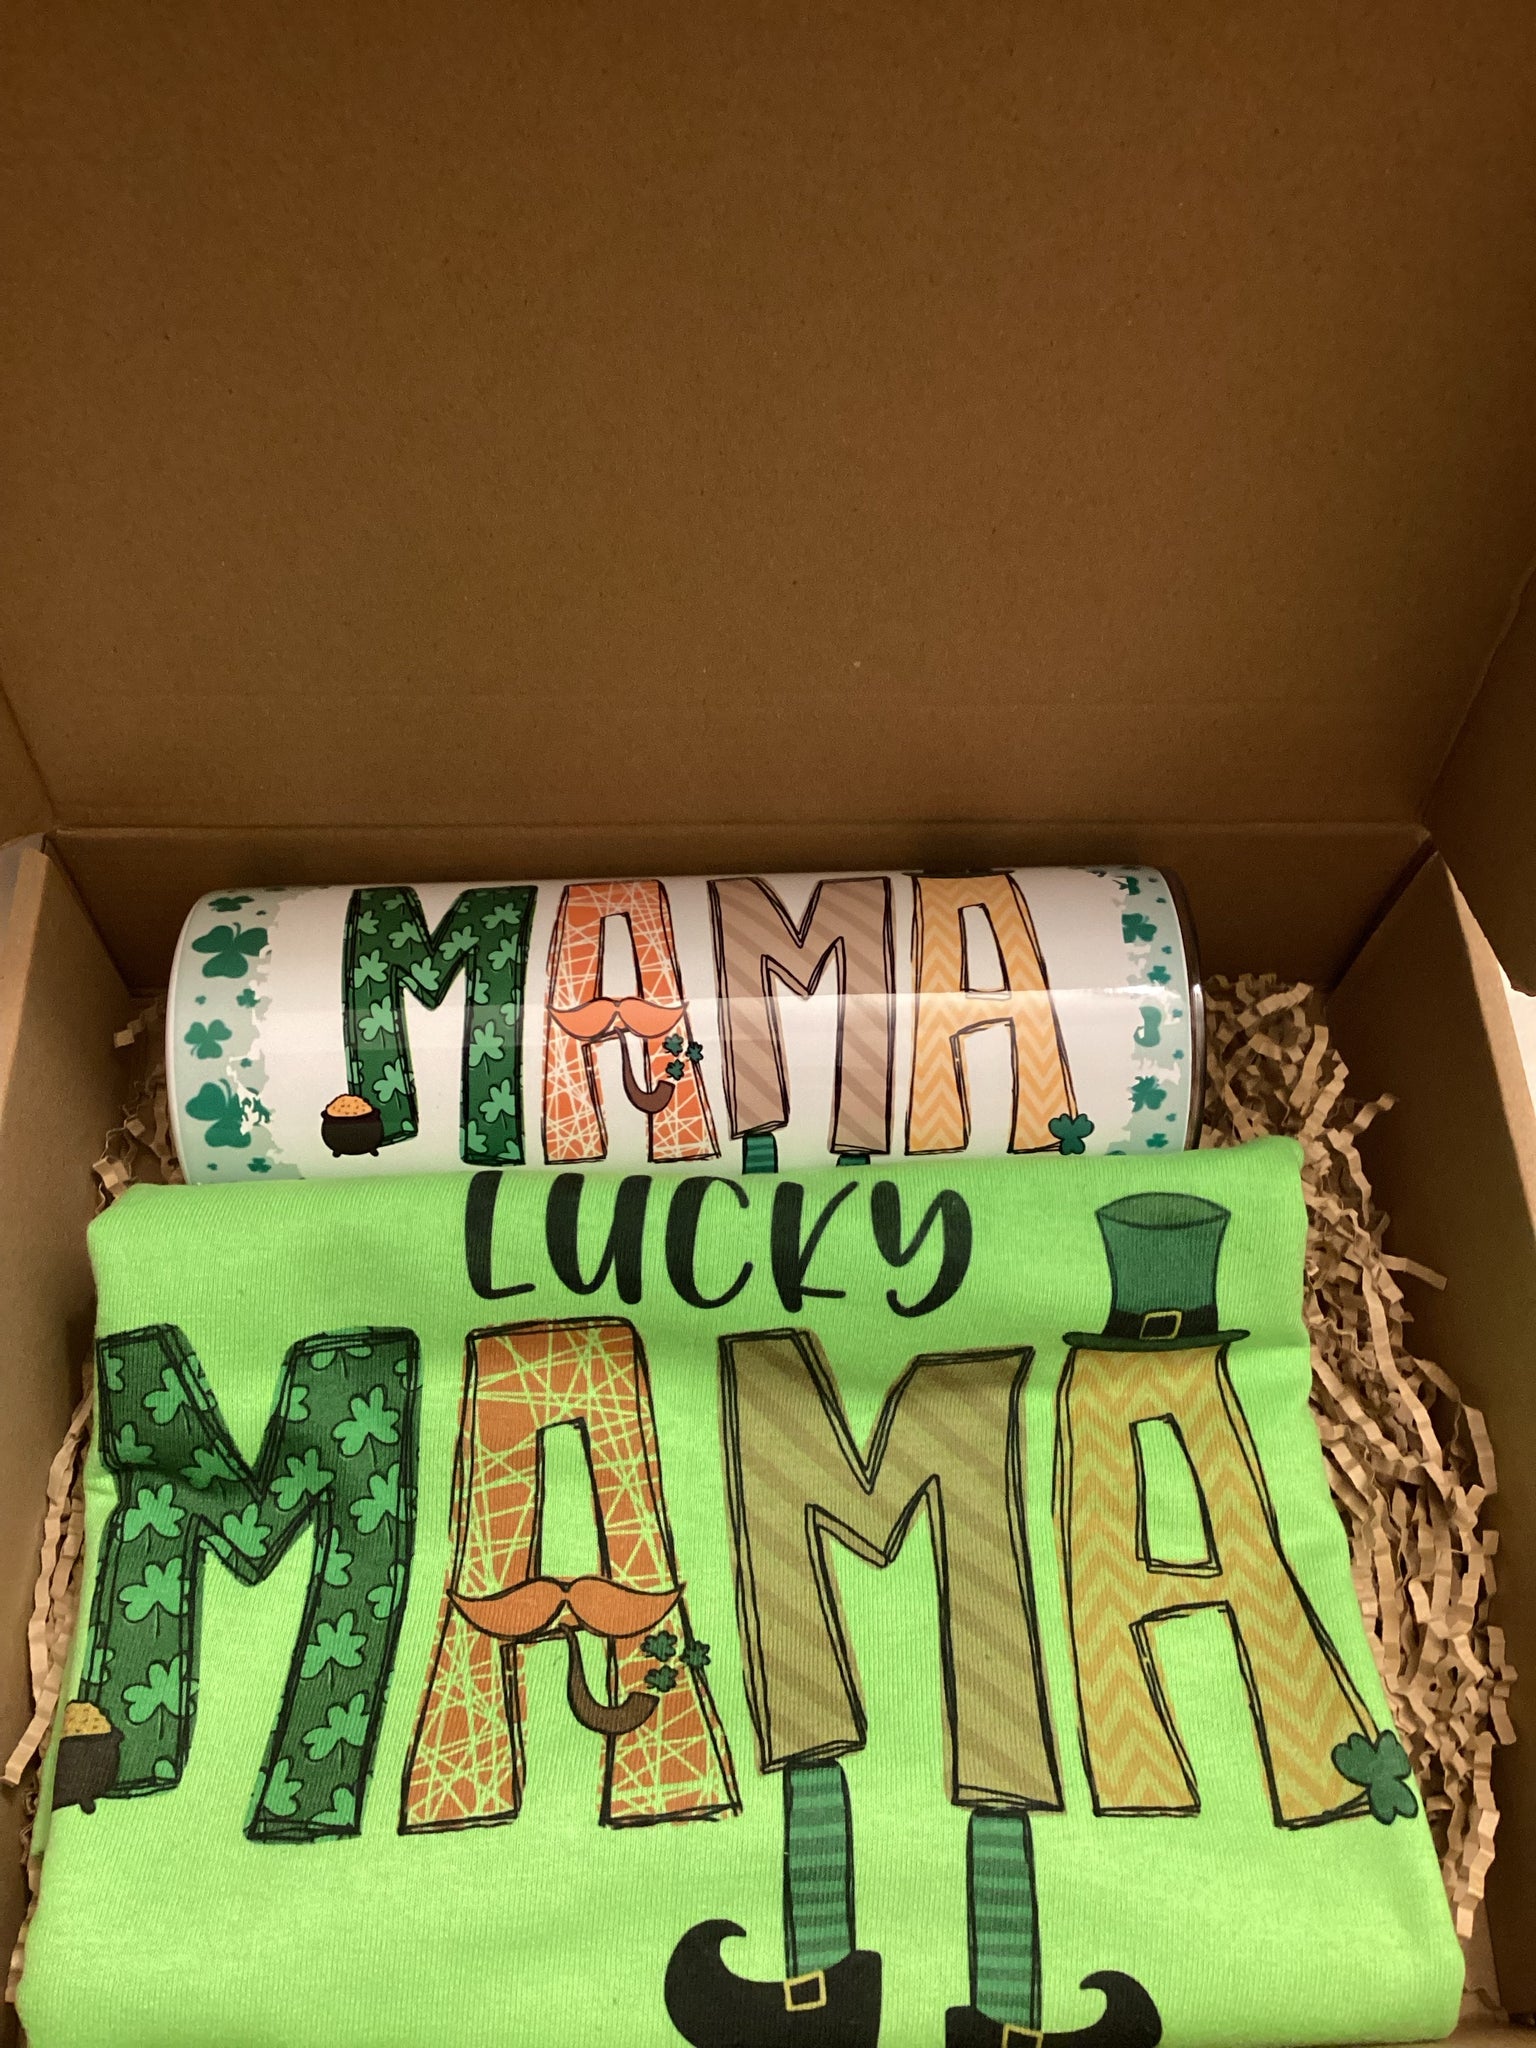 St Patrick Theme Mama Box